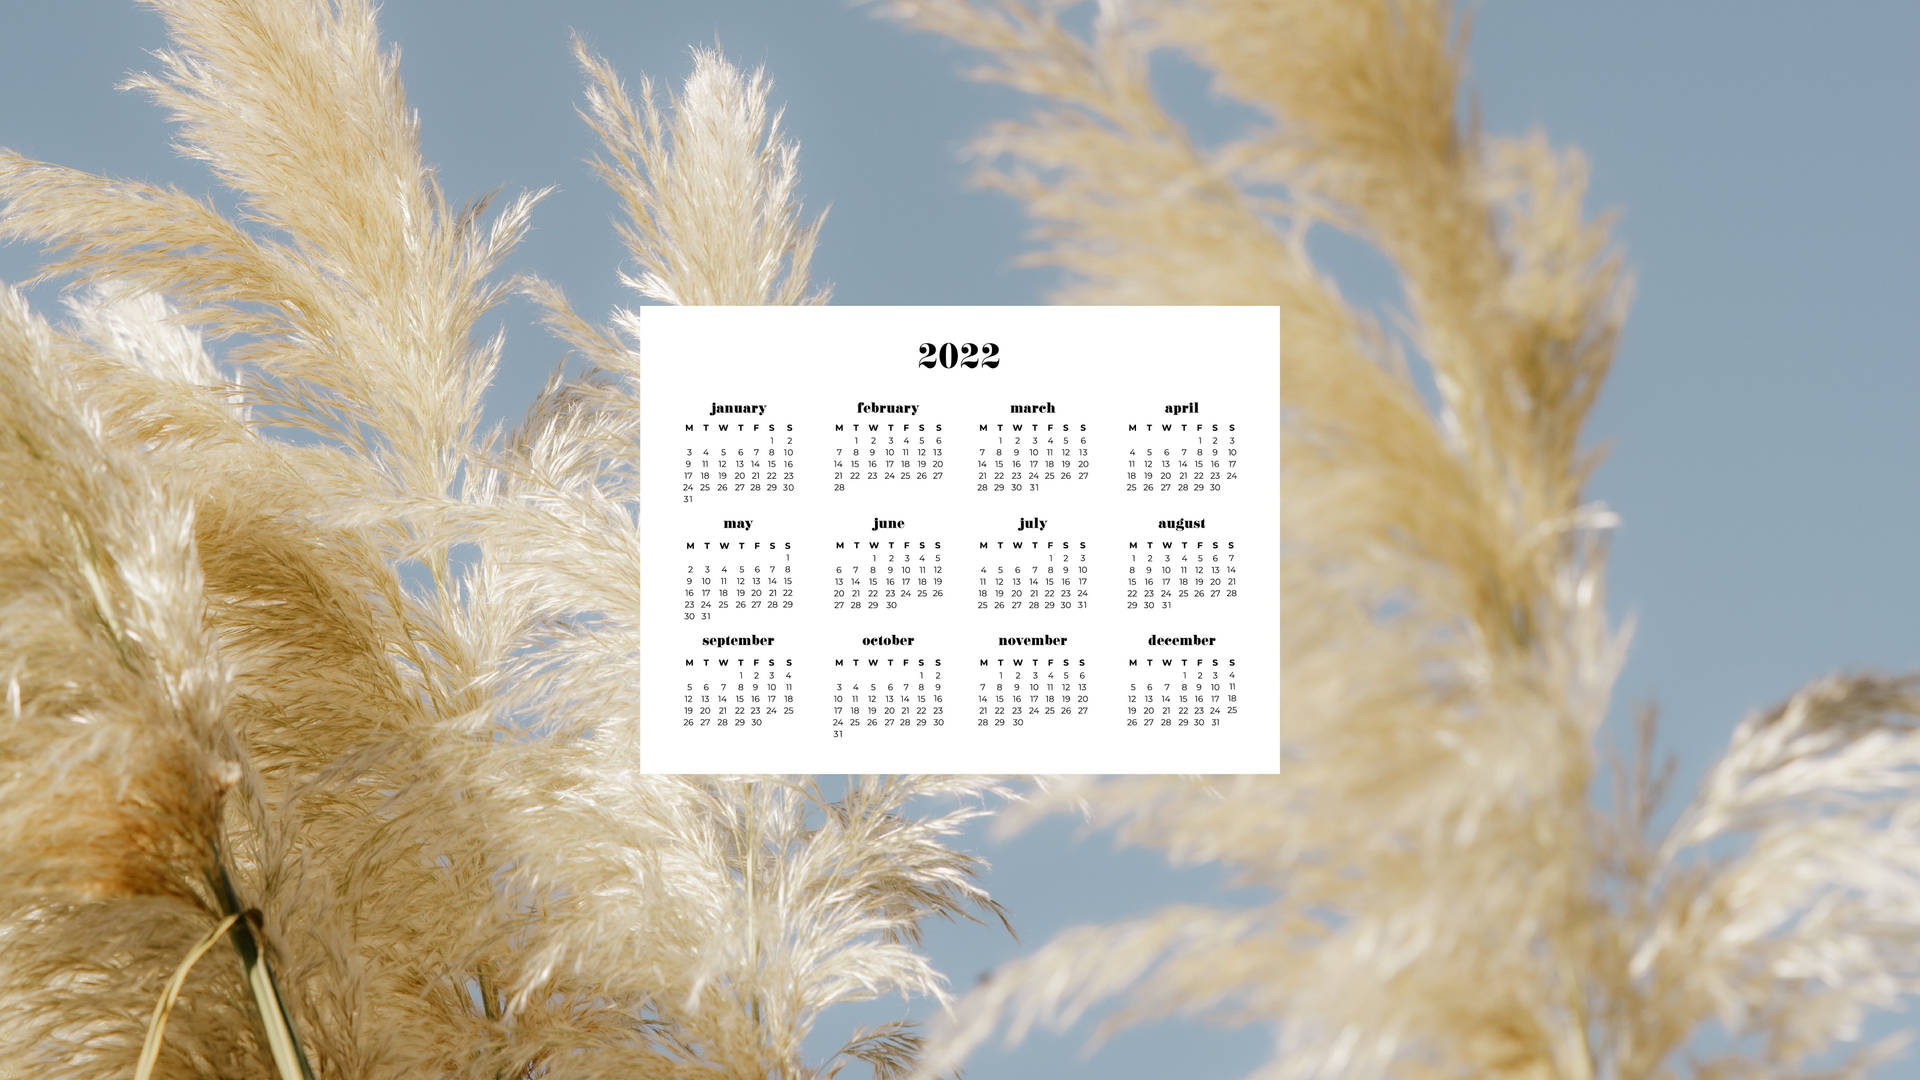 Pampas Grass 2022 Calendar Picture